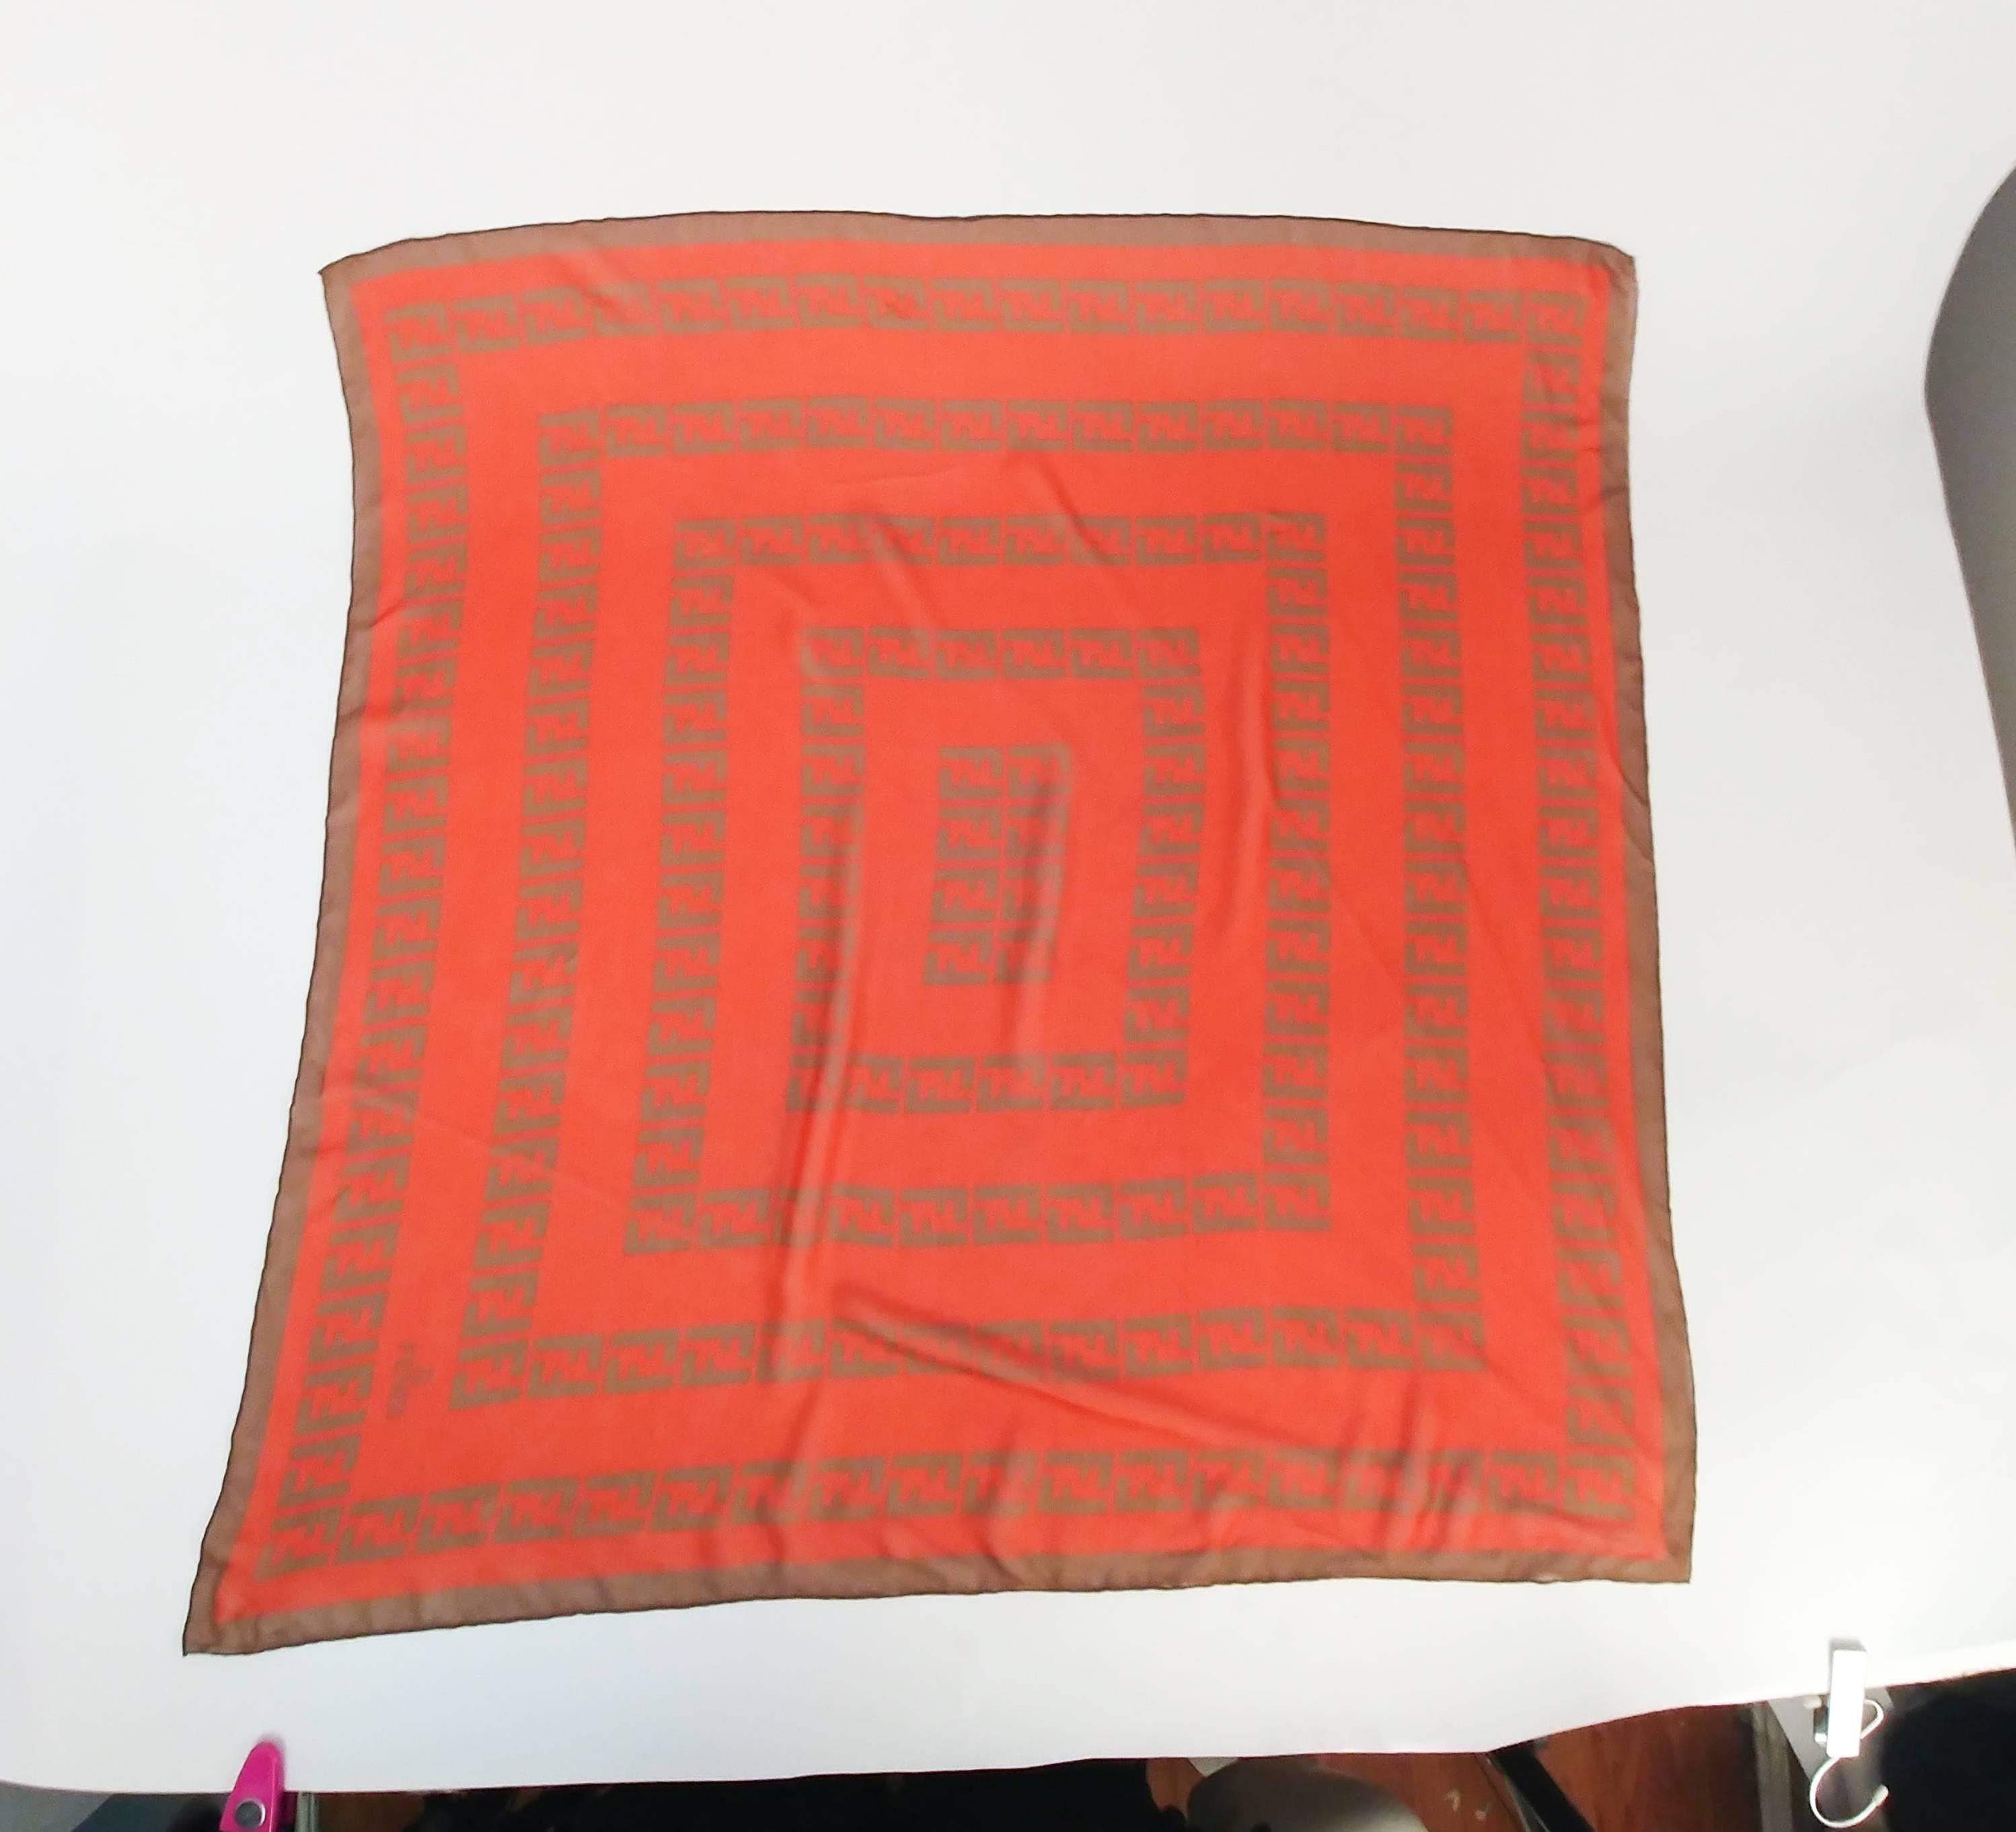 Fendi Silk Chiffon Printed Logo Scarf. Orange and brown printed chiffon scarf. Hand-rolled edges. 